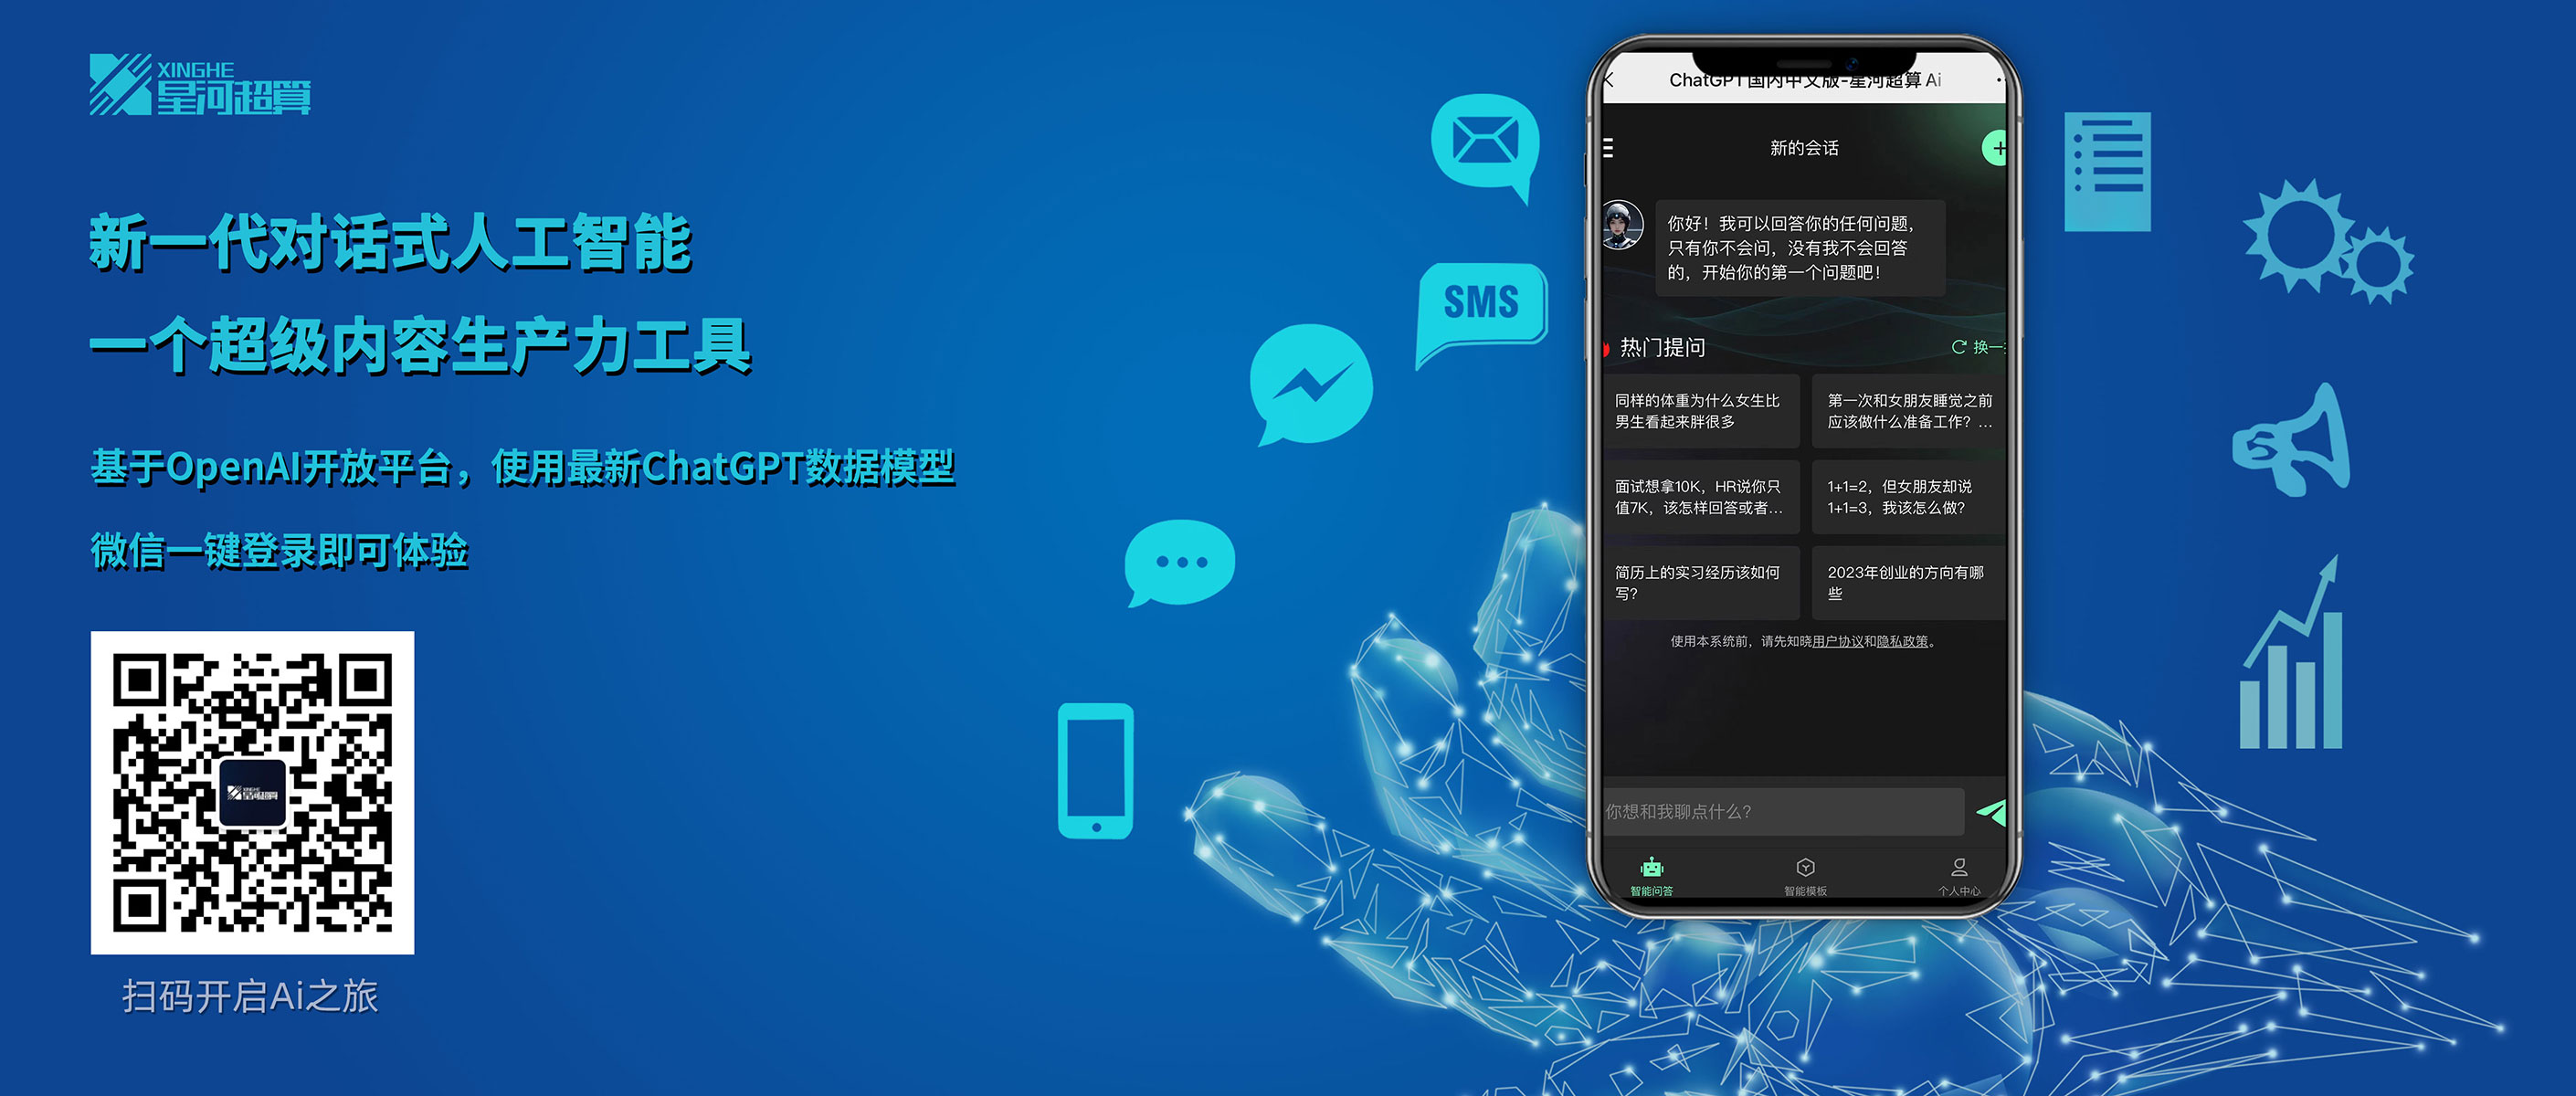 323AI导航网-ChatGPT国内中文版